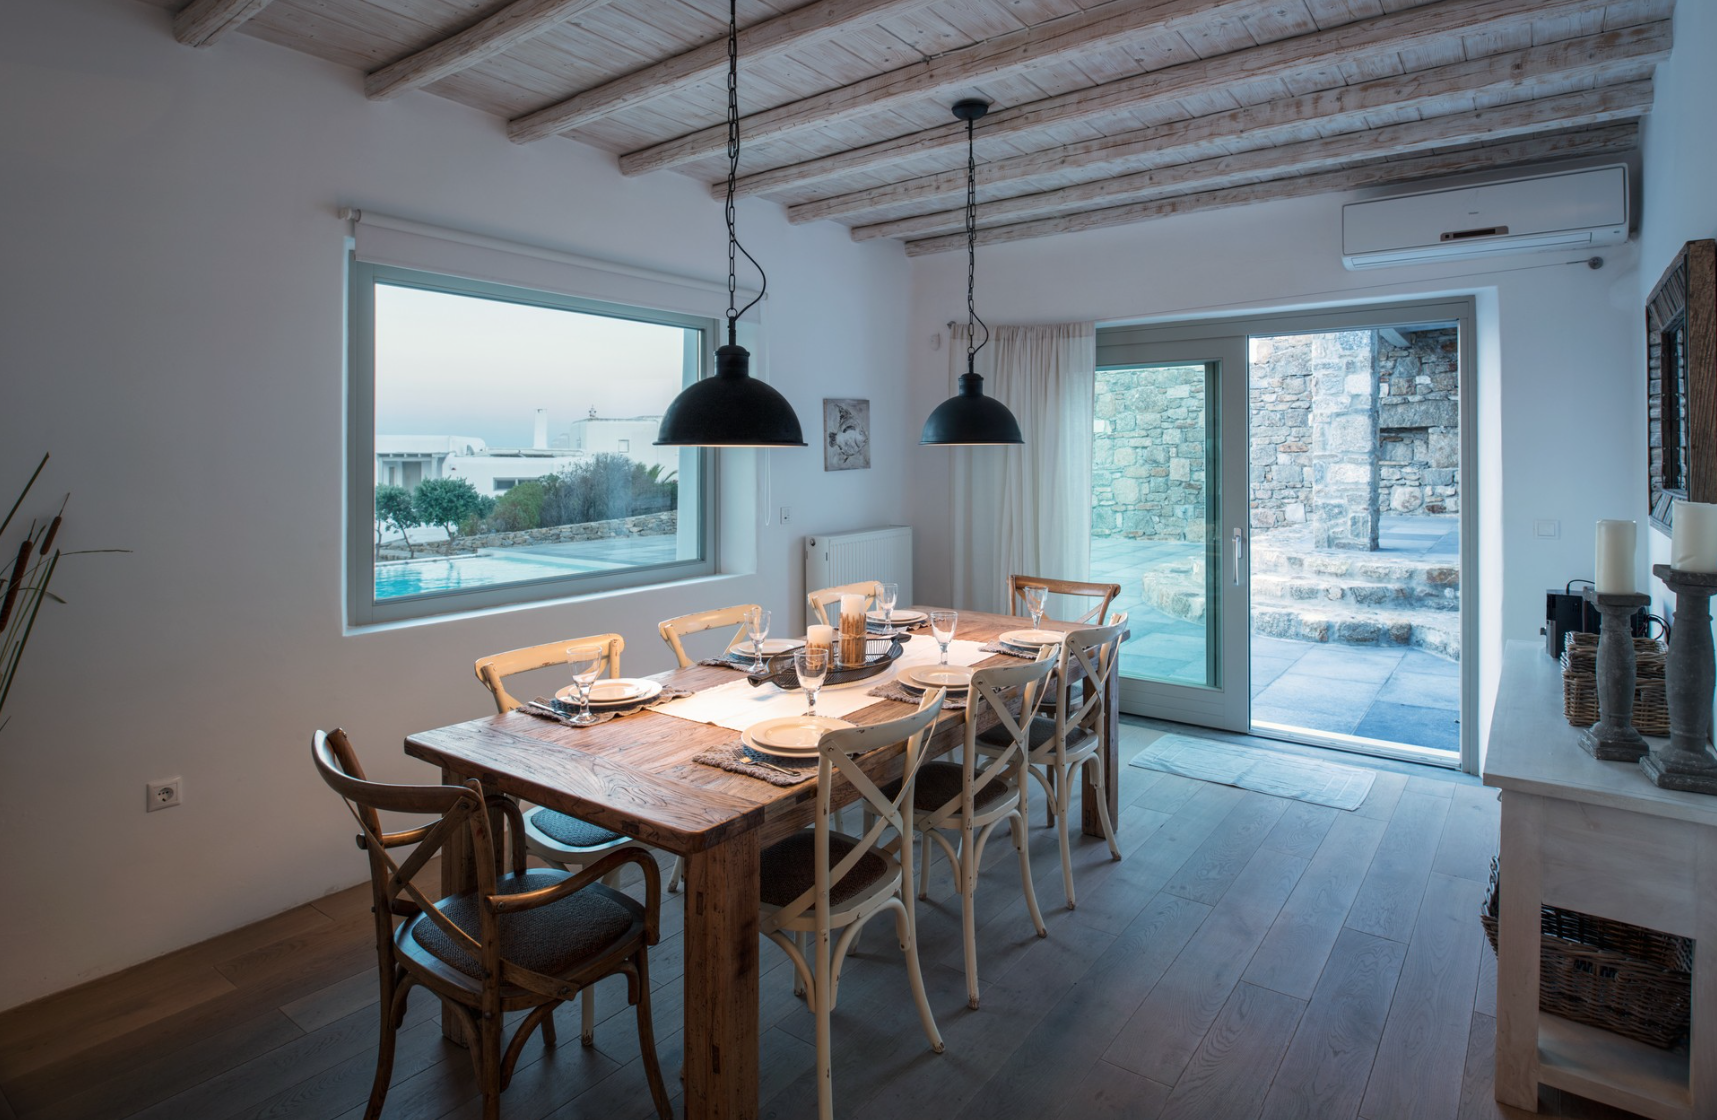 PRIVATE VILLA MYKONOS / KALAFATI ONE- Architectural & Interior Design Office | Greece